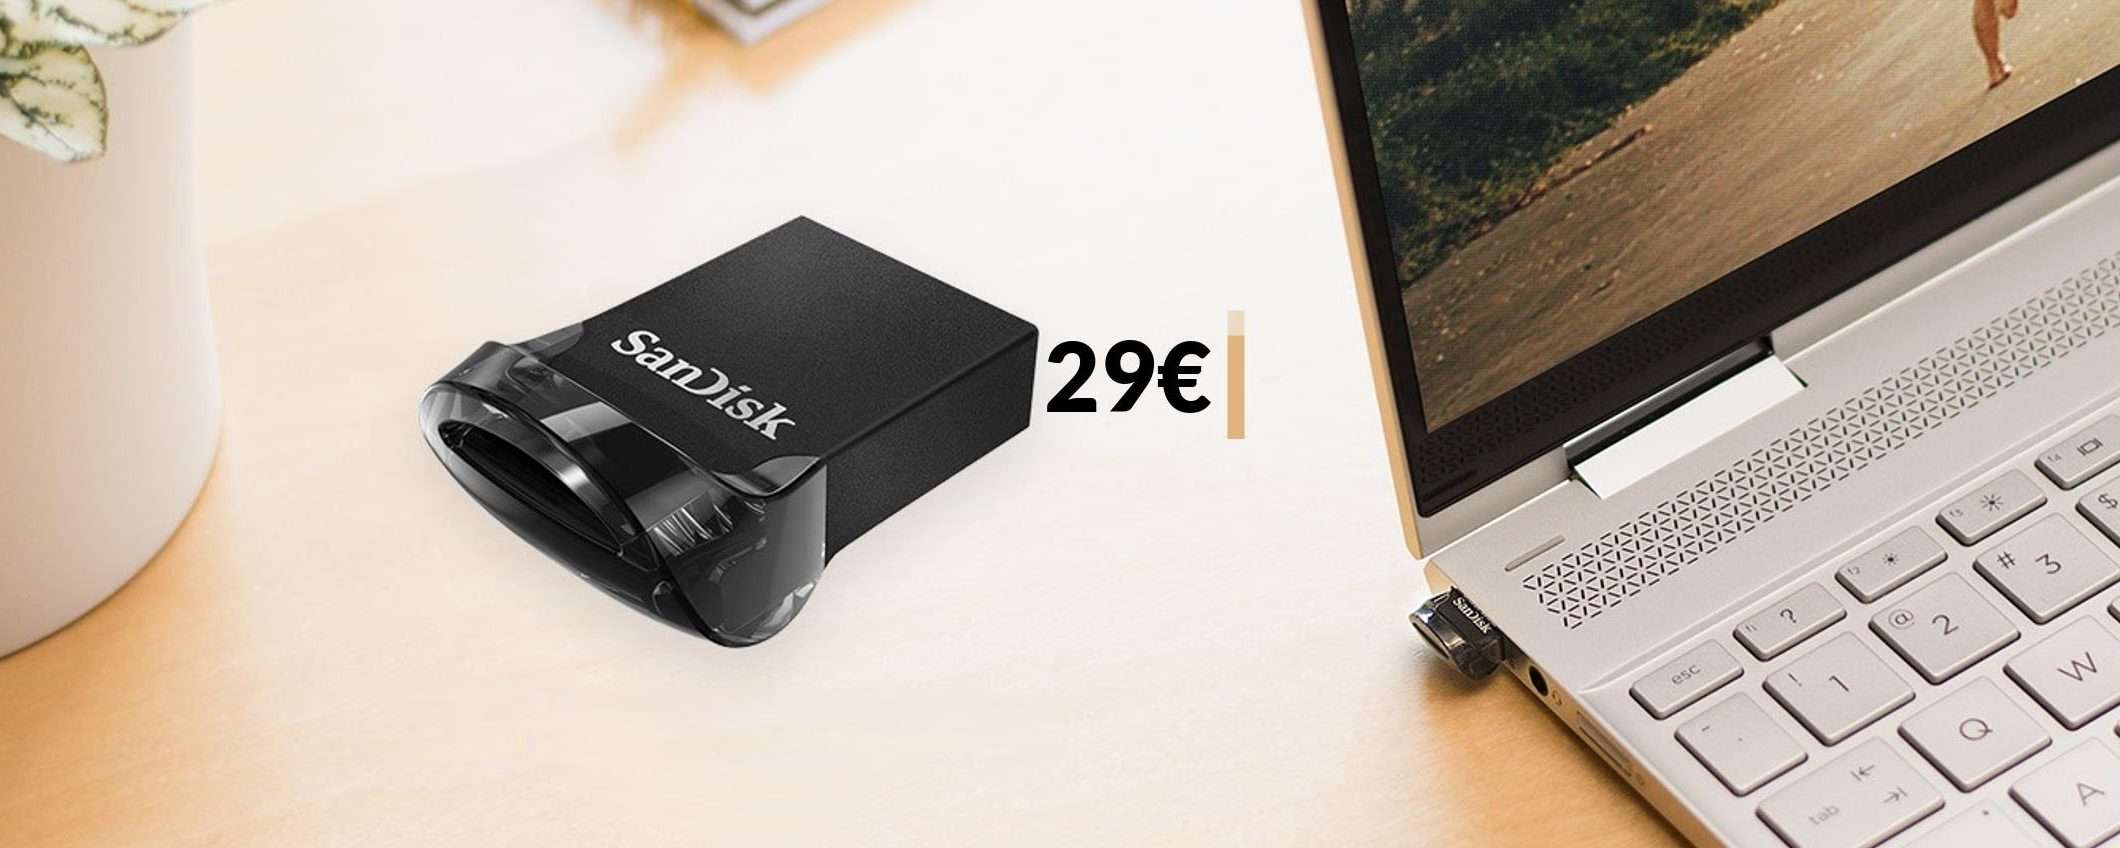 Chiavetta USB 256GB SanDisk: MIGLIAIA di file in meno di 3 cm